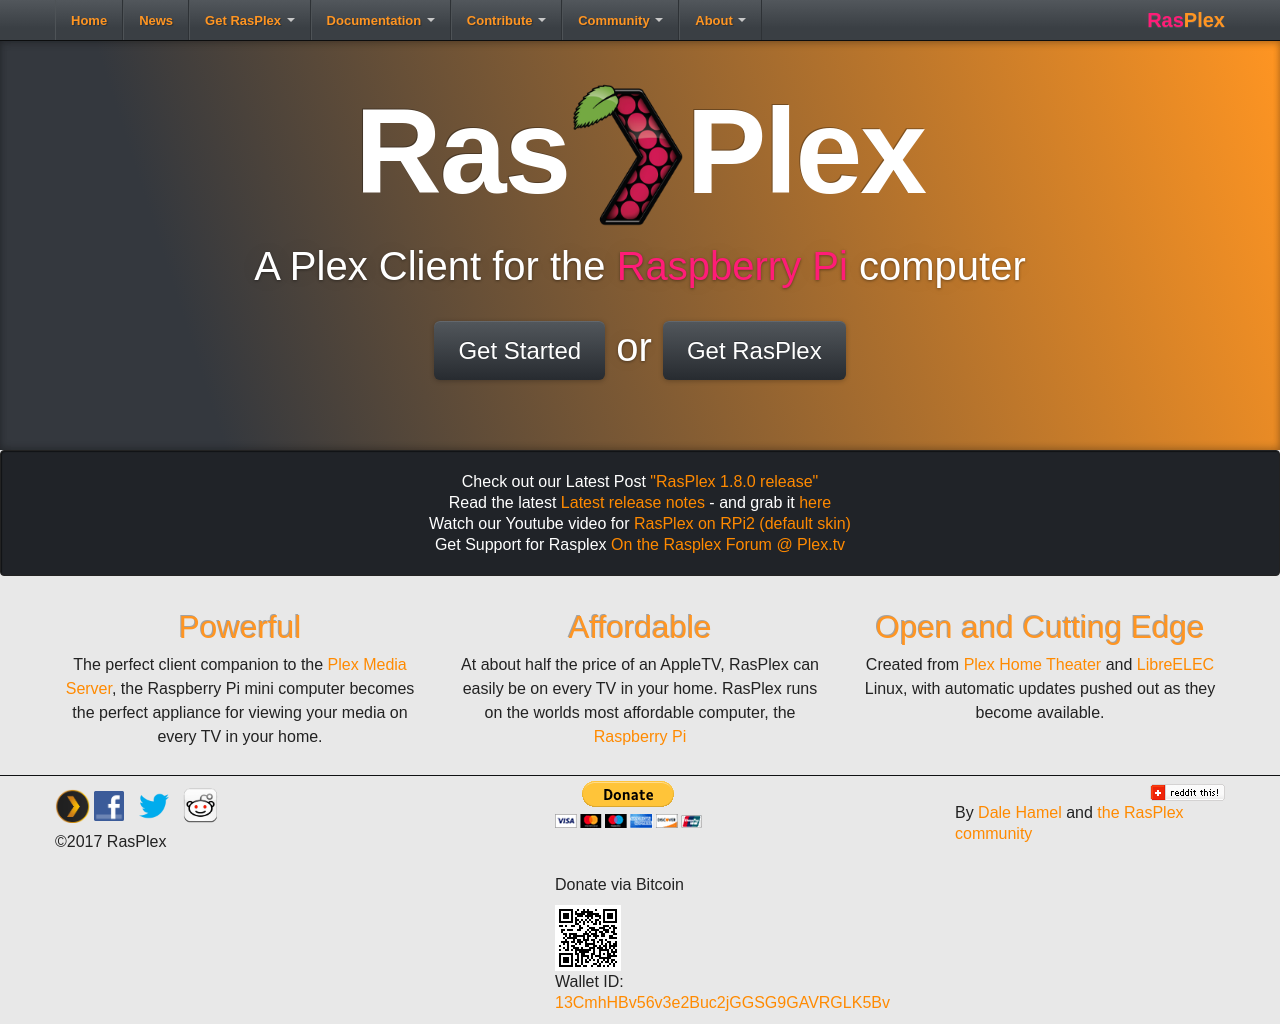 rasplex.com